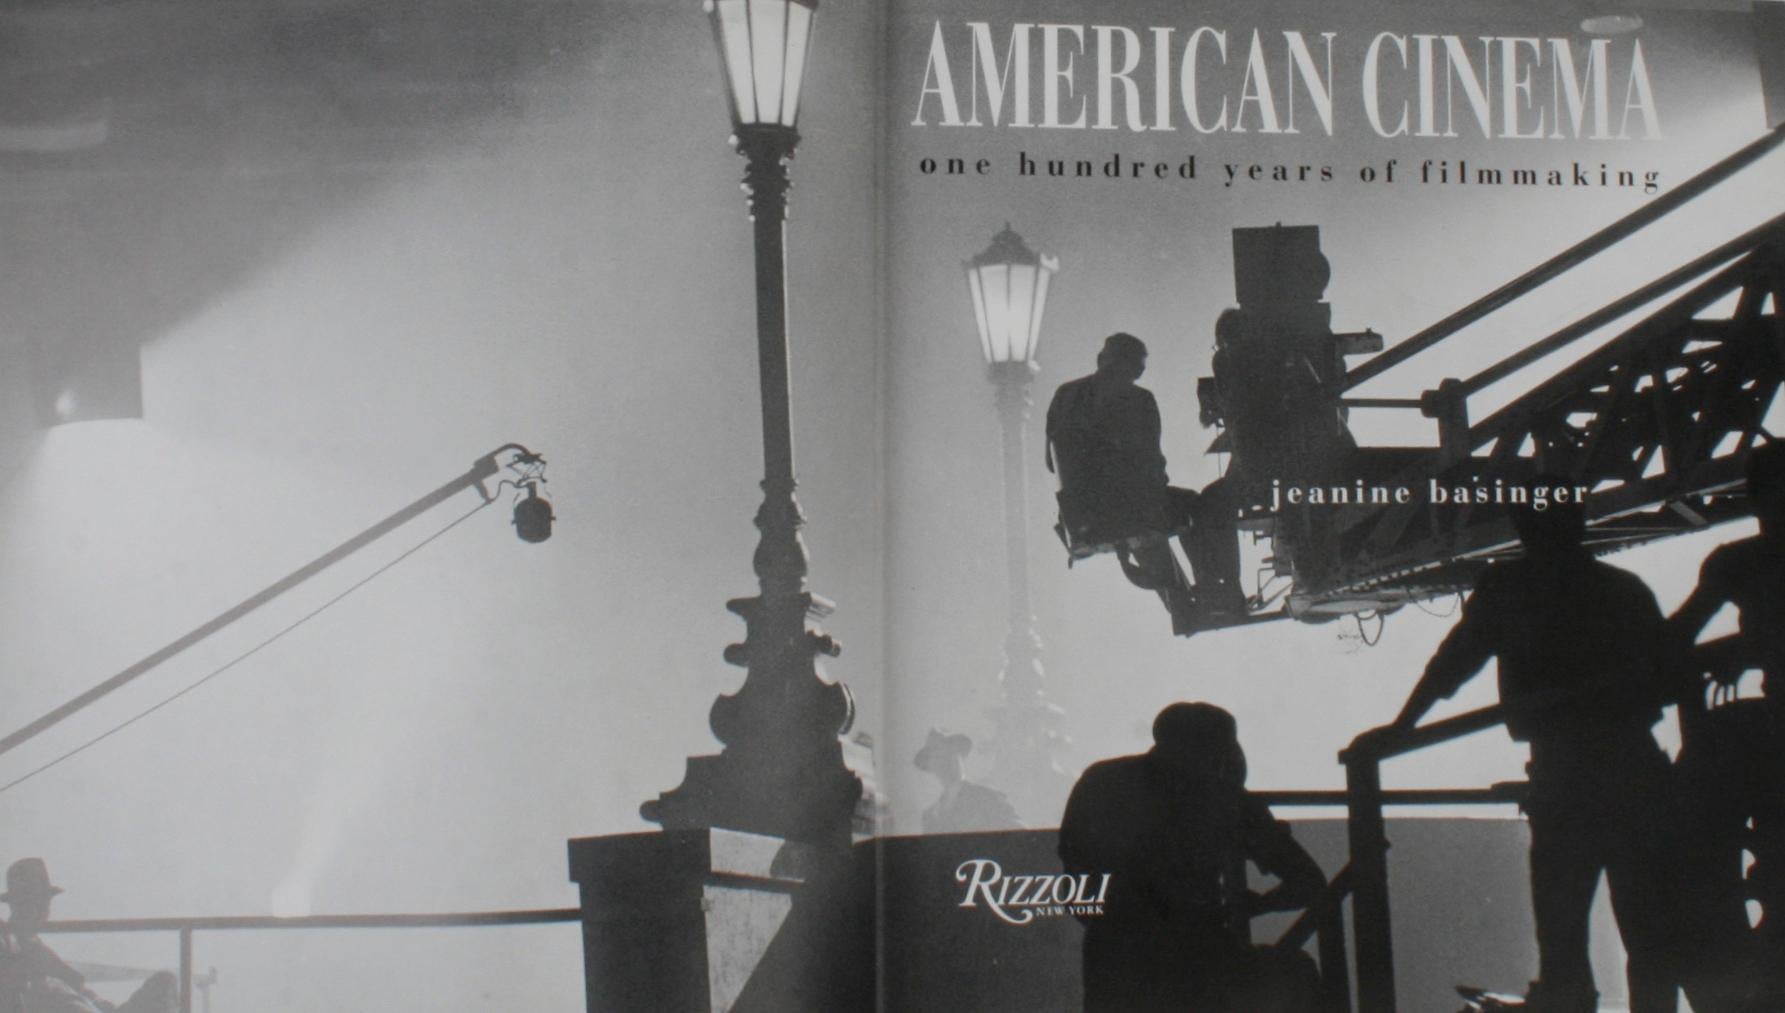 American Cinema, One Hundred Years of Filmmaking par Jeanie Basinger. New York : Rizzoli, 1994. première édition à couverture rigide publiée pour commémorer la célébration du centenaire de la naissance du cinéma américain et une série télévisée de